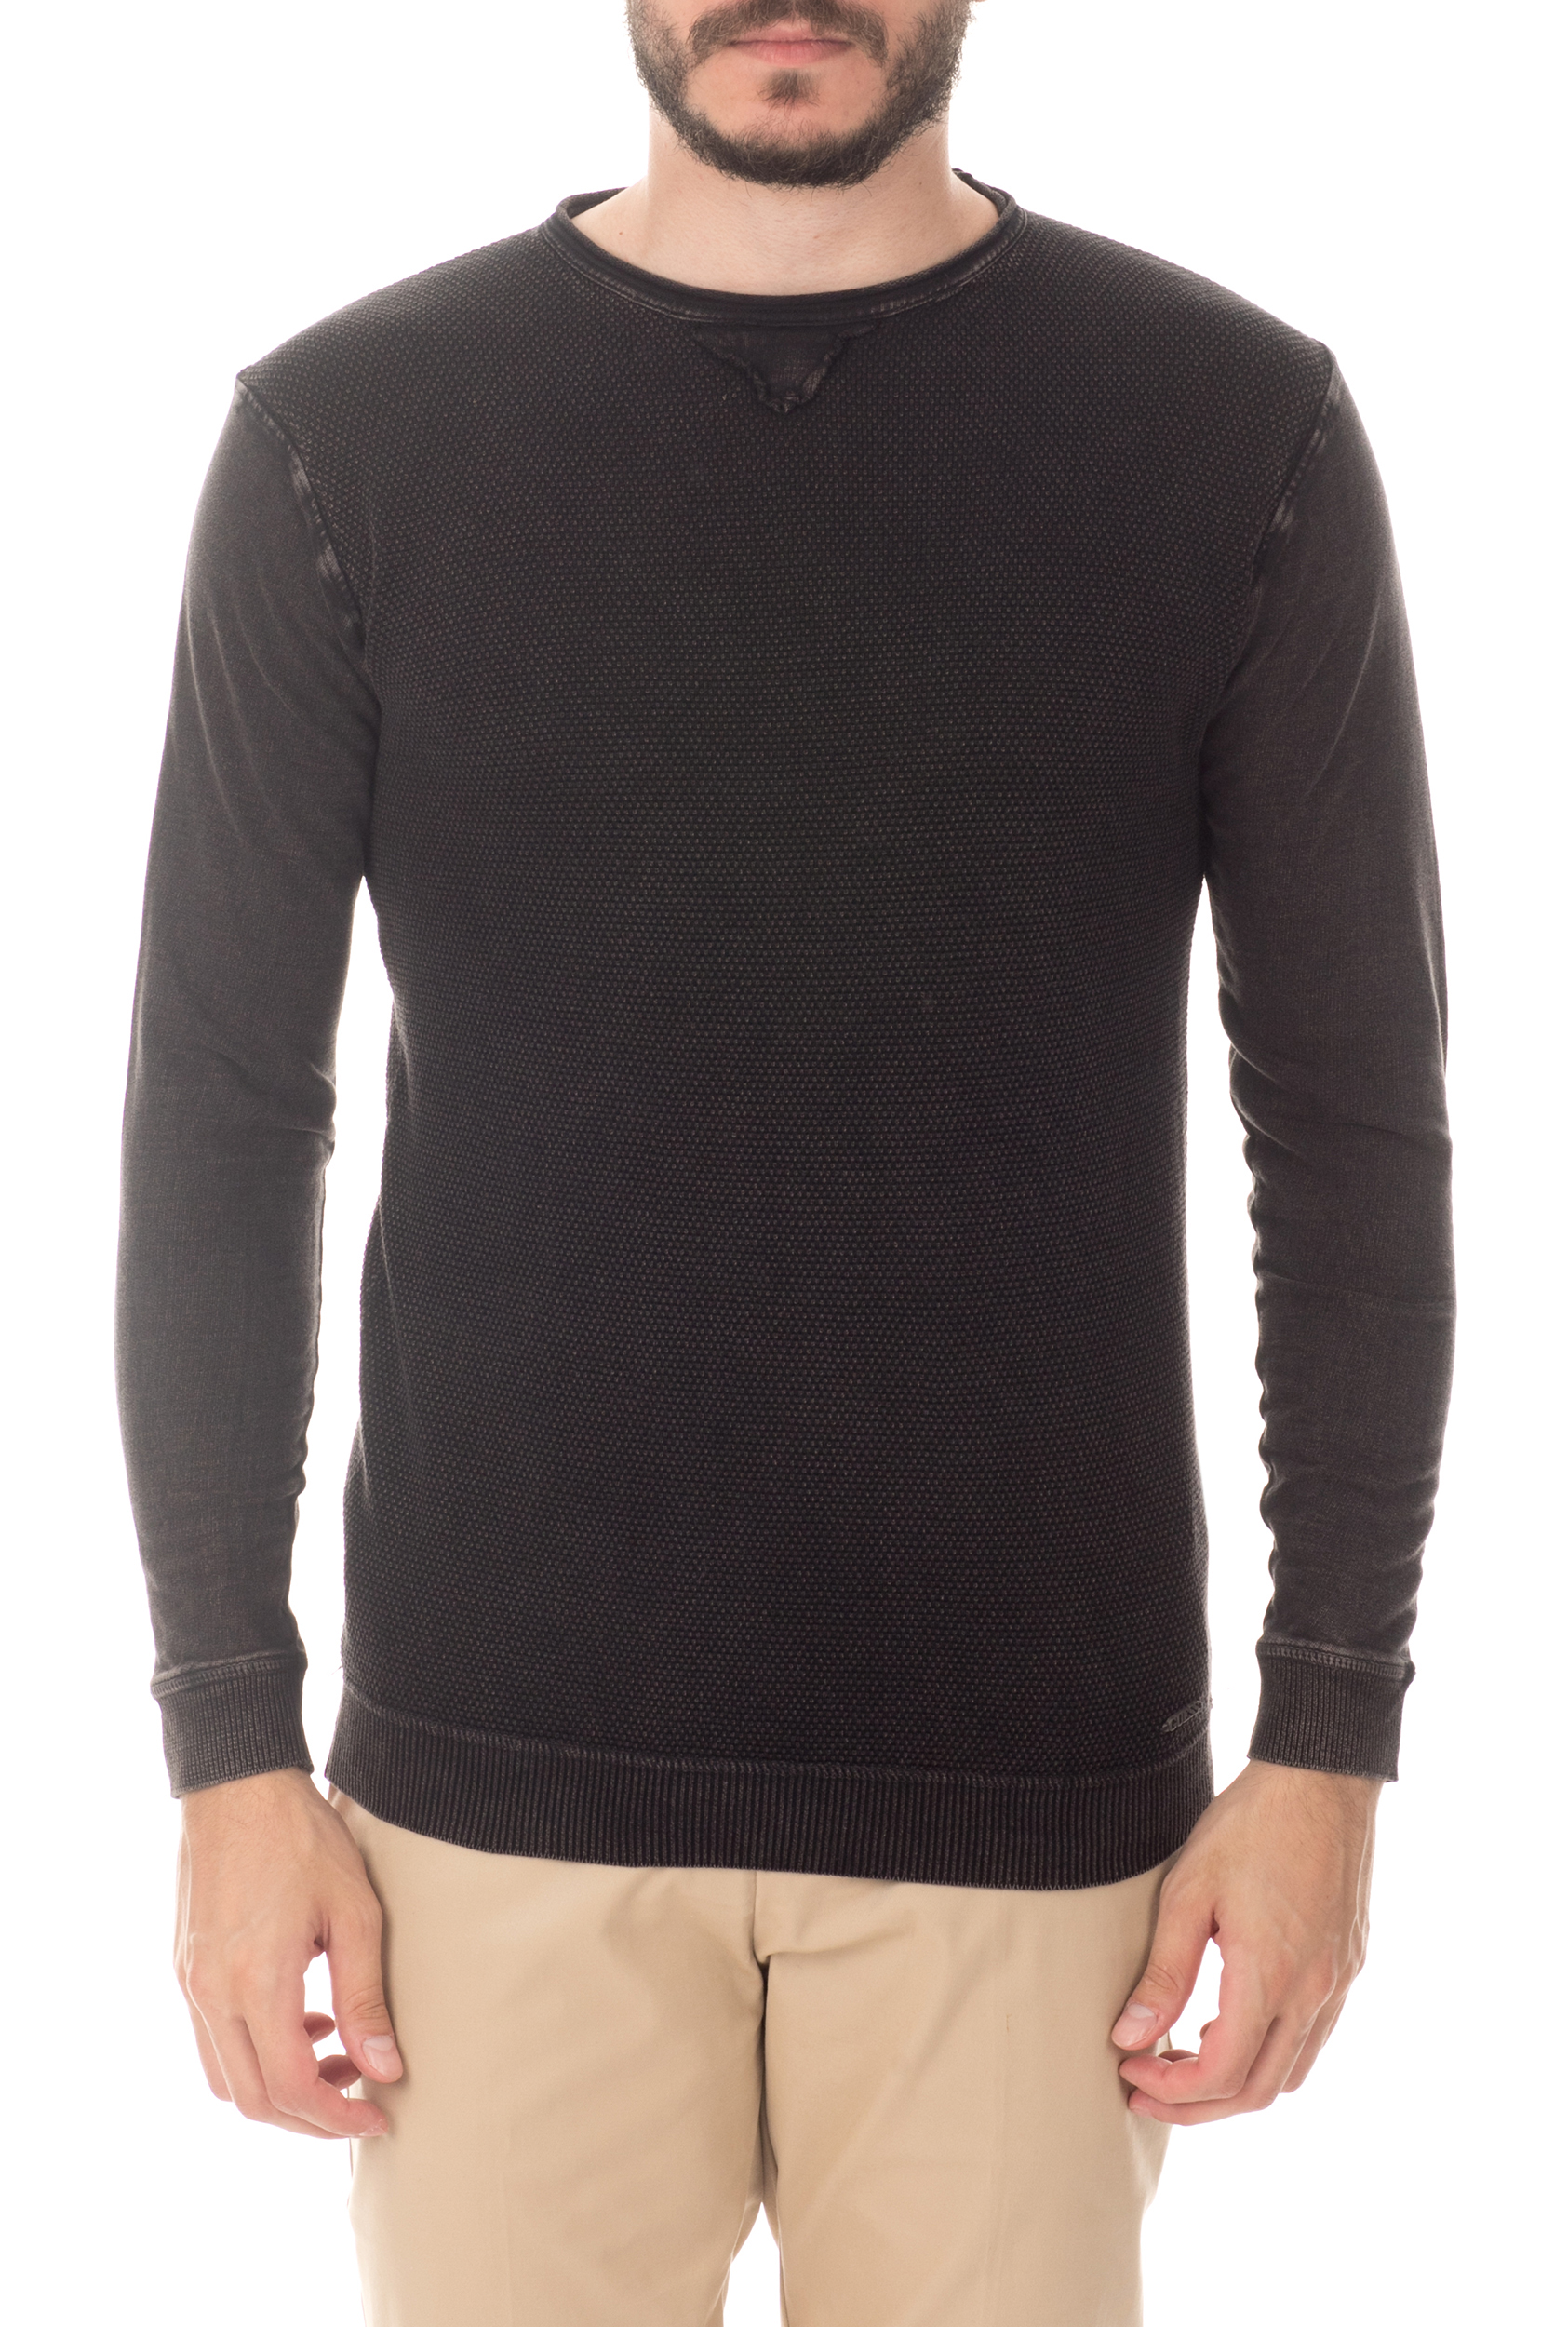 Ανδρικά/Ρούχα/Μπλούζες/Μακρυμάνικες GUESS - Ανδρική μπλούζα GUESS μαύρη